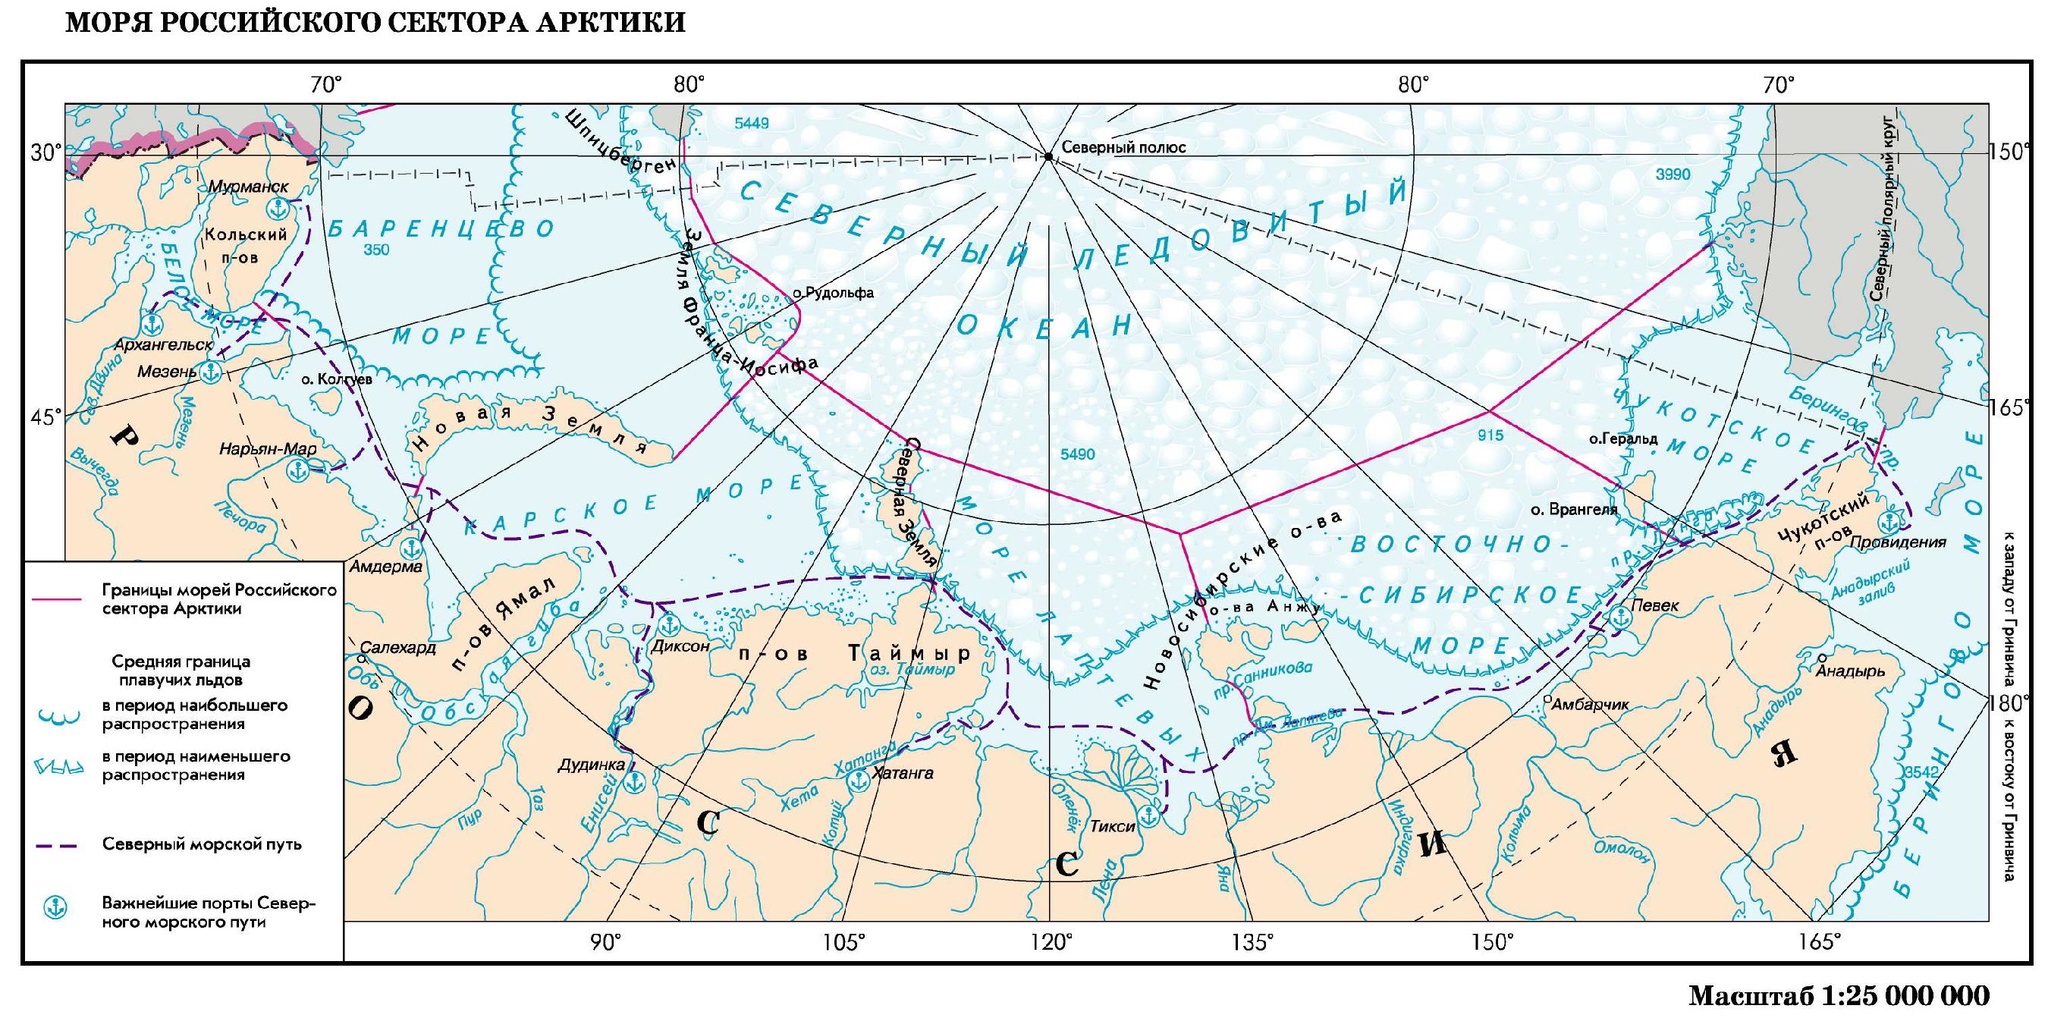 Бассейн океана баренцево. Северный морской путь на карте границы РФ. Арктика Северный морской путь на карте. Граница российского сектора Арктики. Морская граница России в Северном Ледовитом океане на карте.